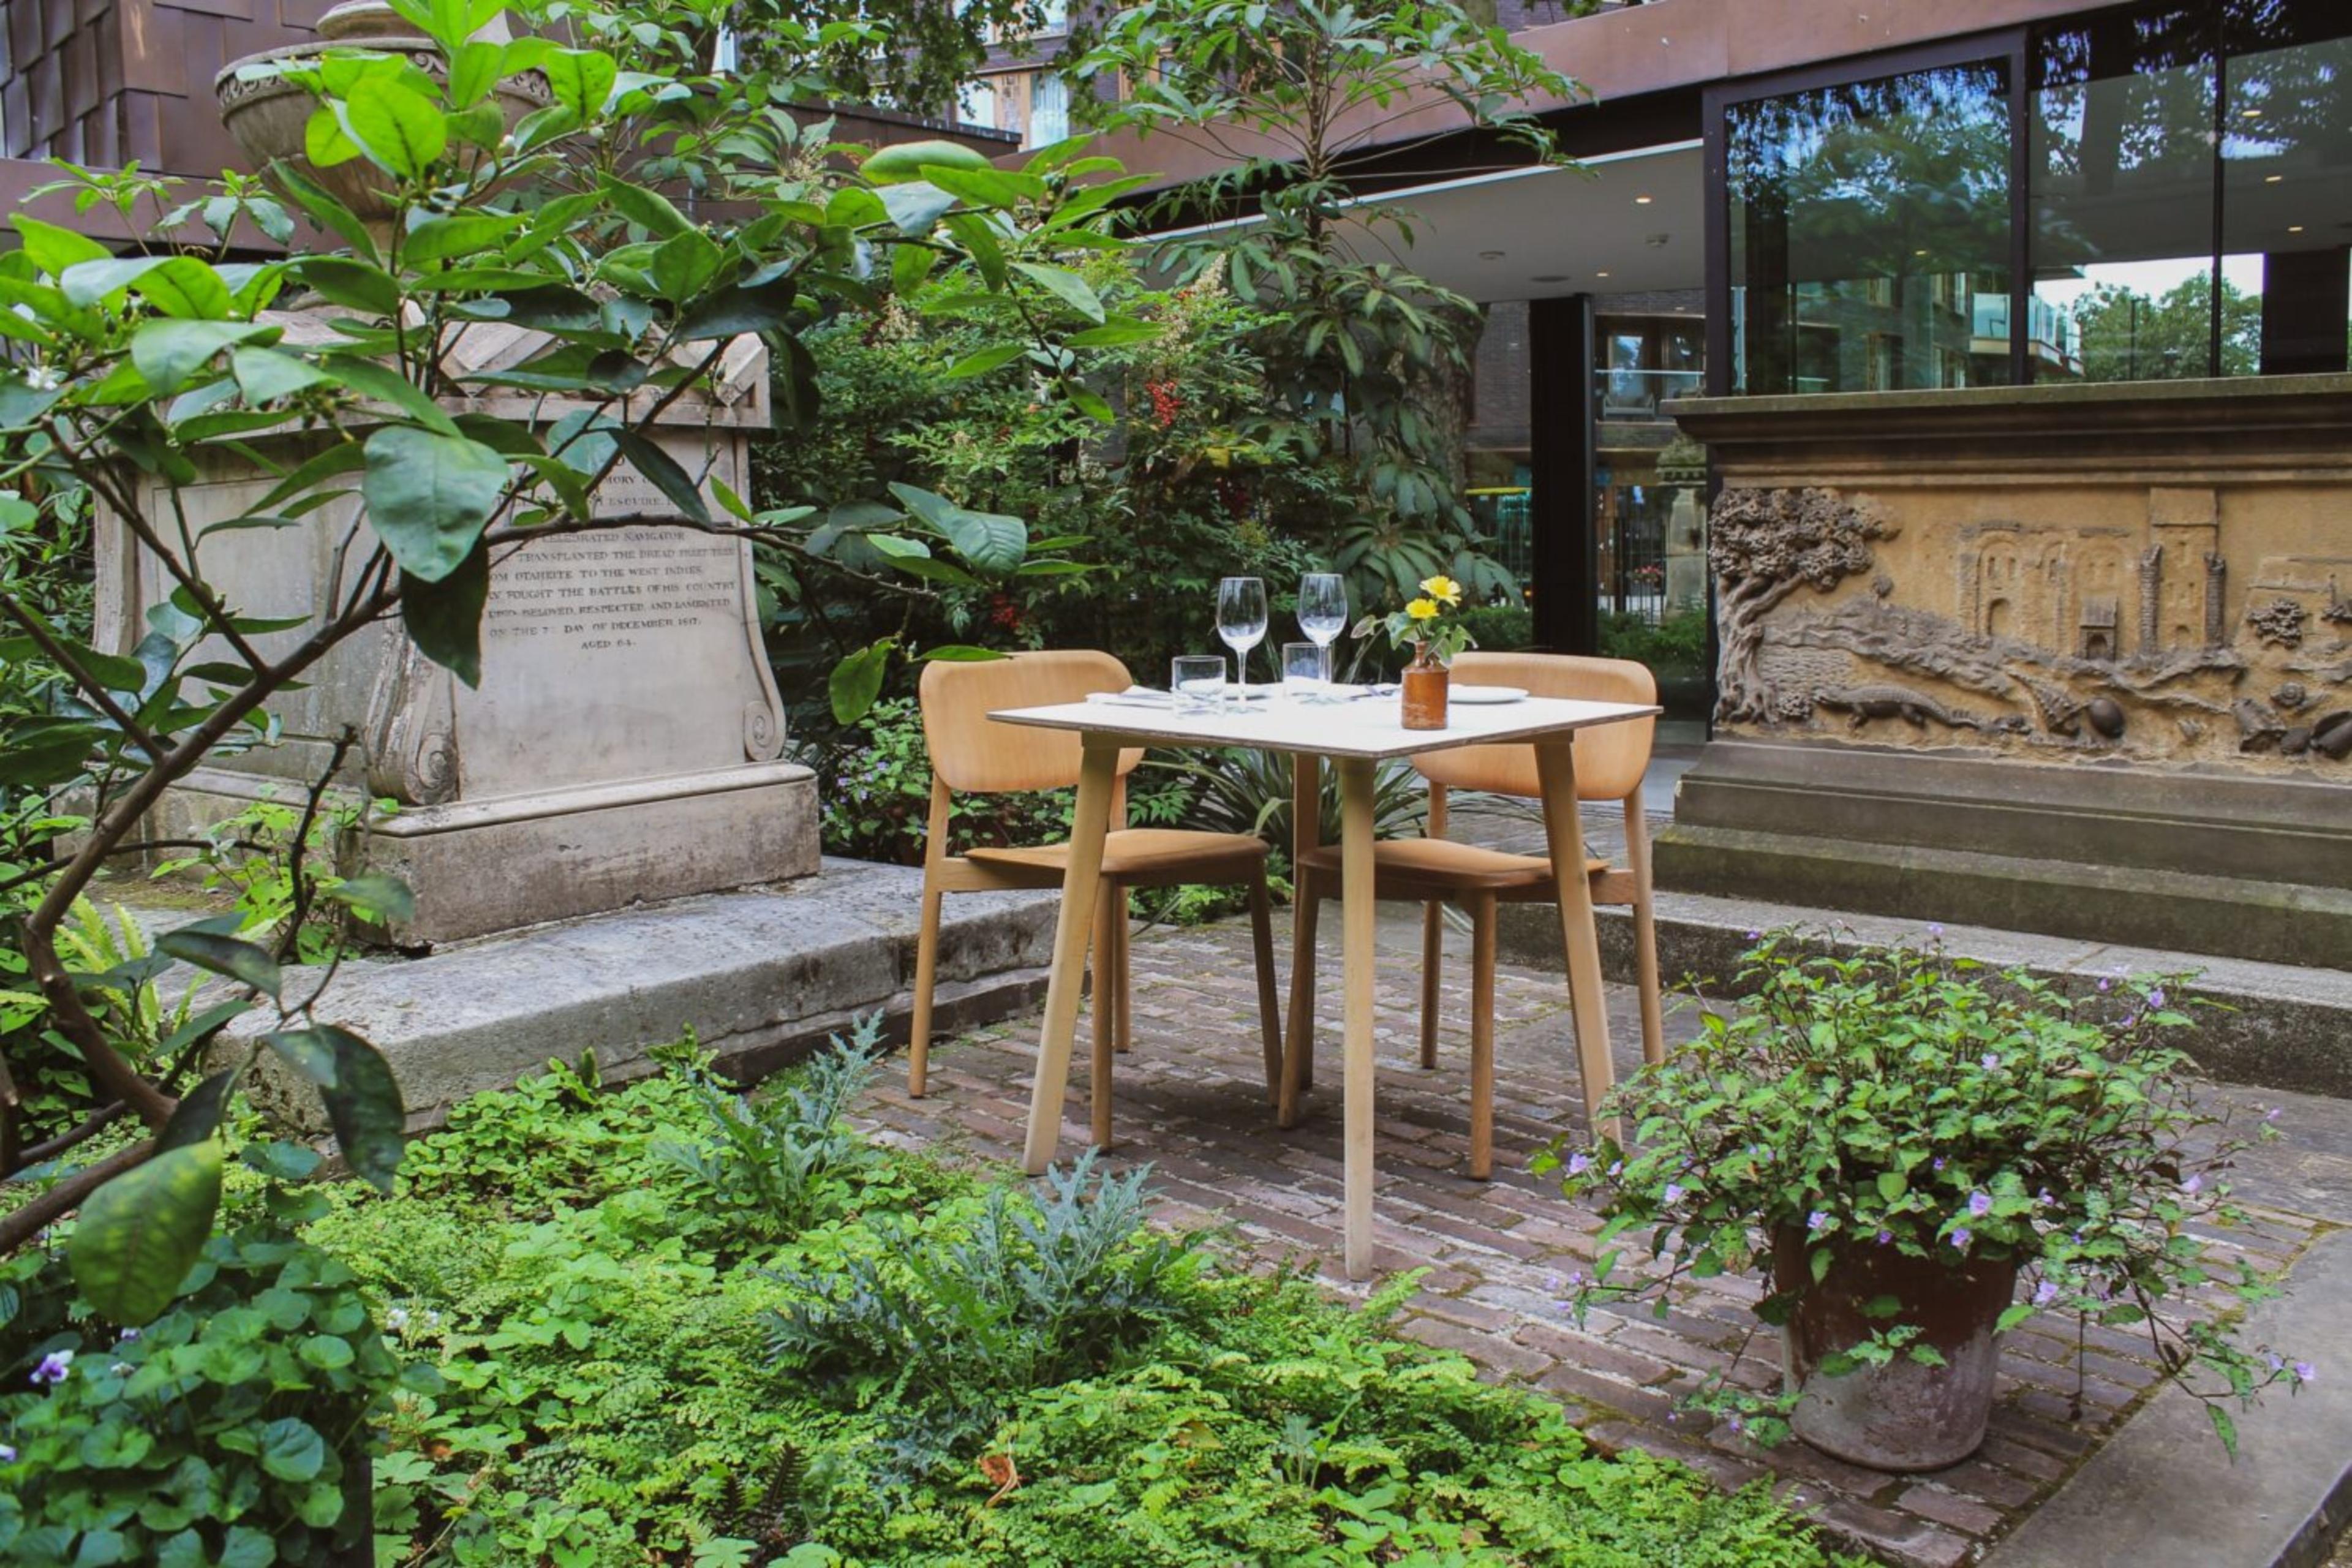 The Garden Café